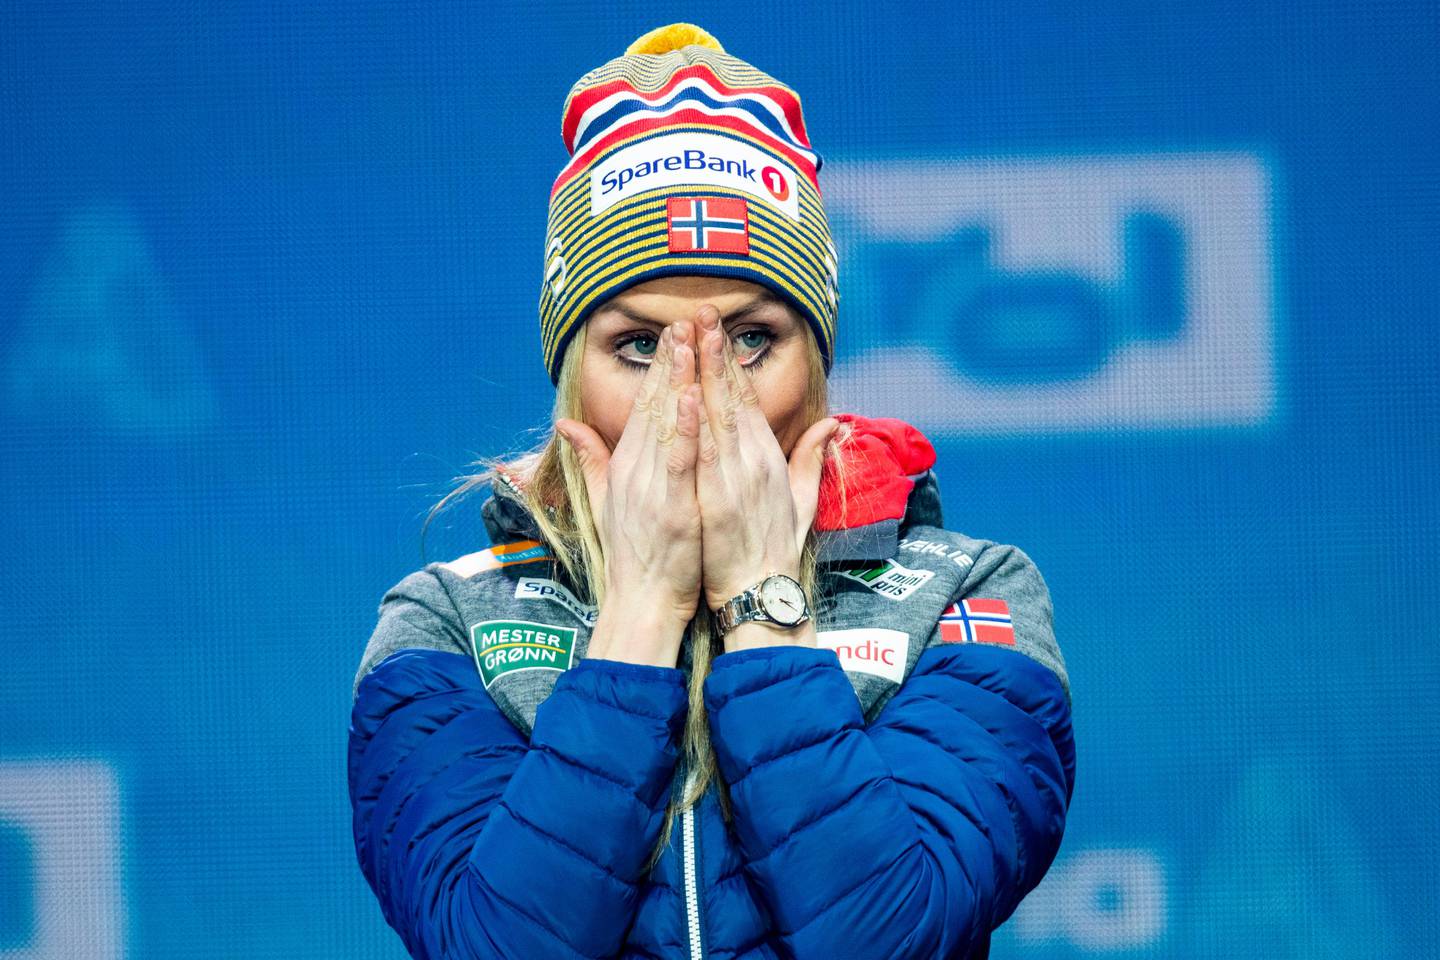 Seefeld, Østerrike 20190302.
Therese Johaug ble rørt til tårer under medaljeseremonien etter 30 km for kvinner under VM i Seefeld 2019. Johaug vant gull.
Foto: Tore Meek / NTB scanpix